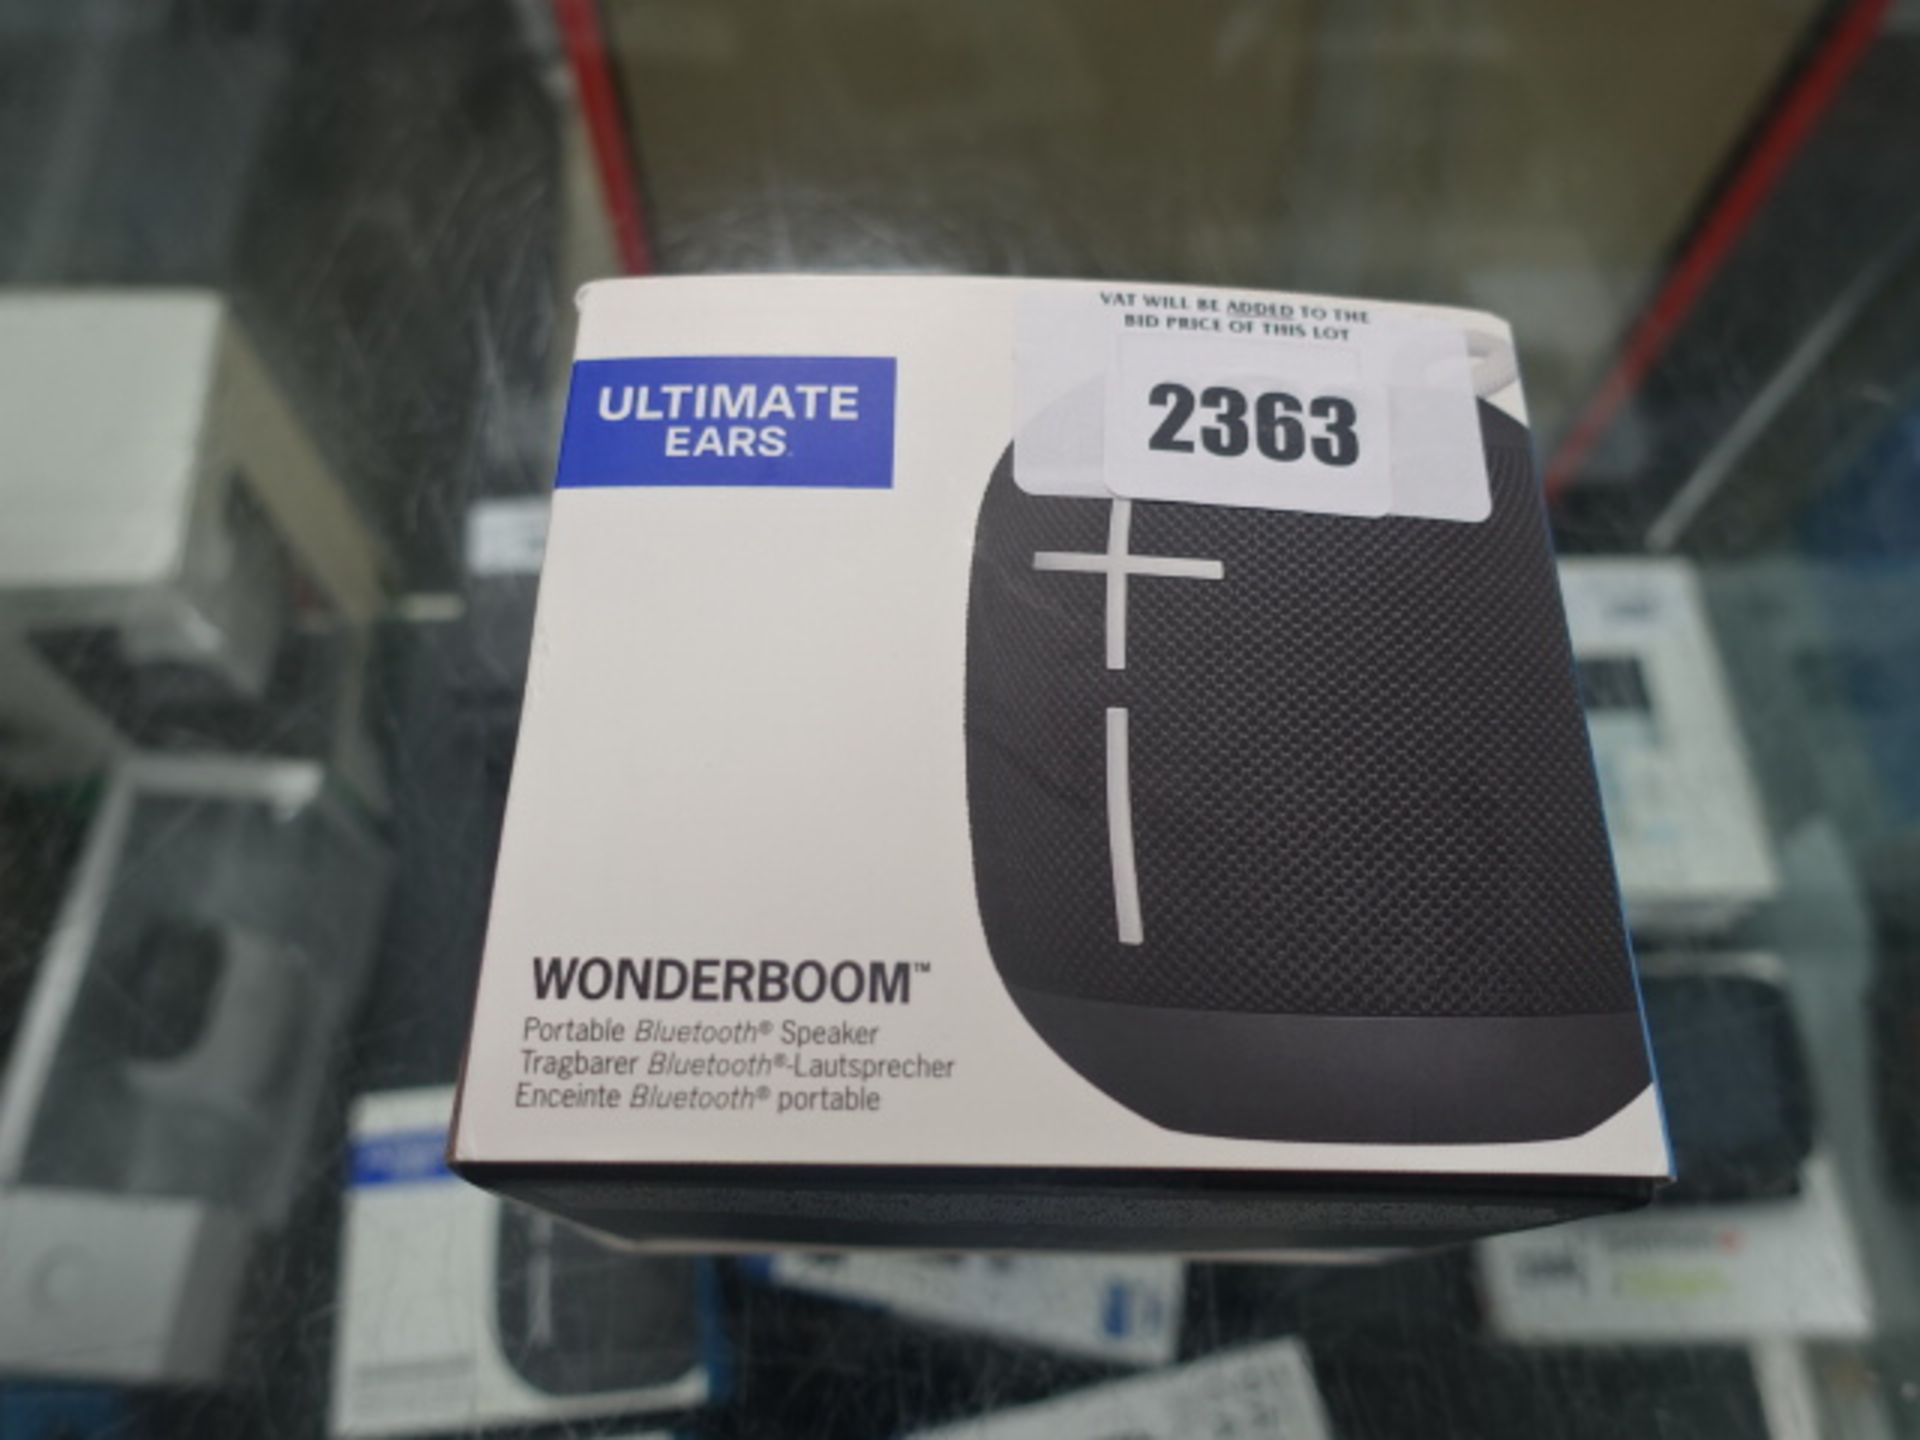 2263 - Ultimate Ears Wonderboom bluetooth speaker in box